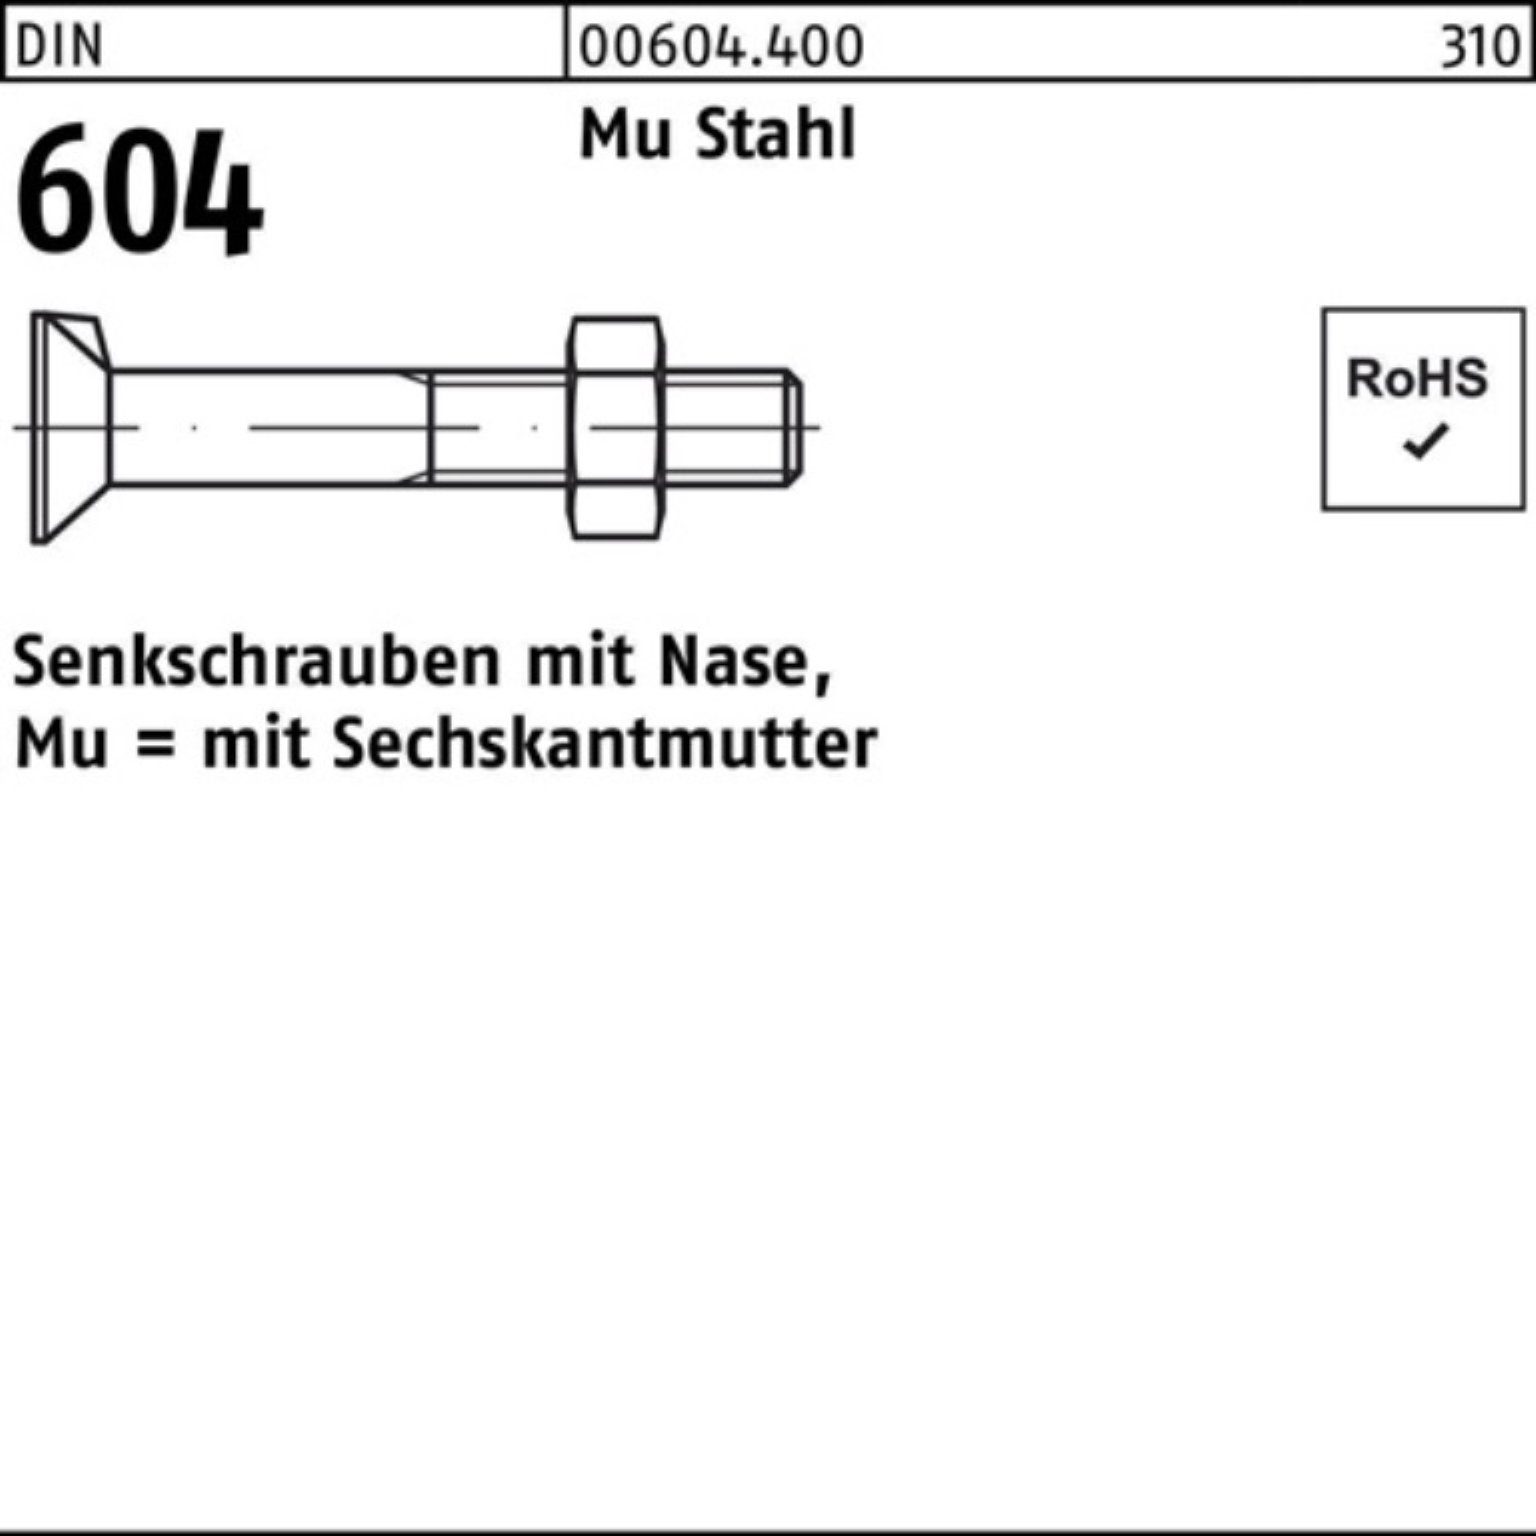 Reyher Senkschraube 100er 604 Nase/6-ktmutter 4.6 Stahl M20x DIN Senkschraube Mu 110 Pack